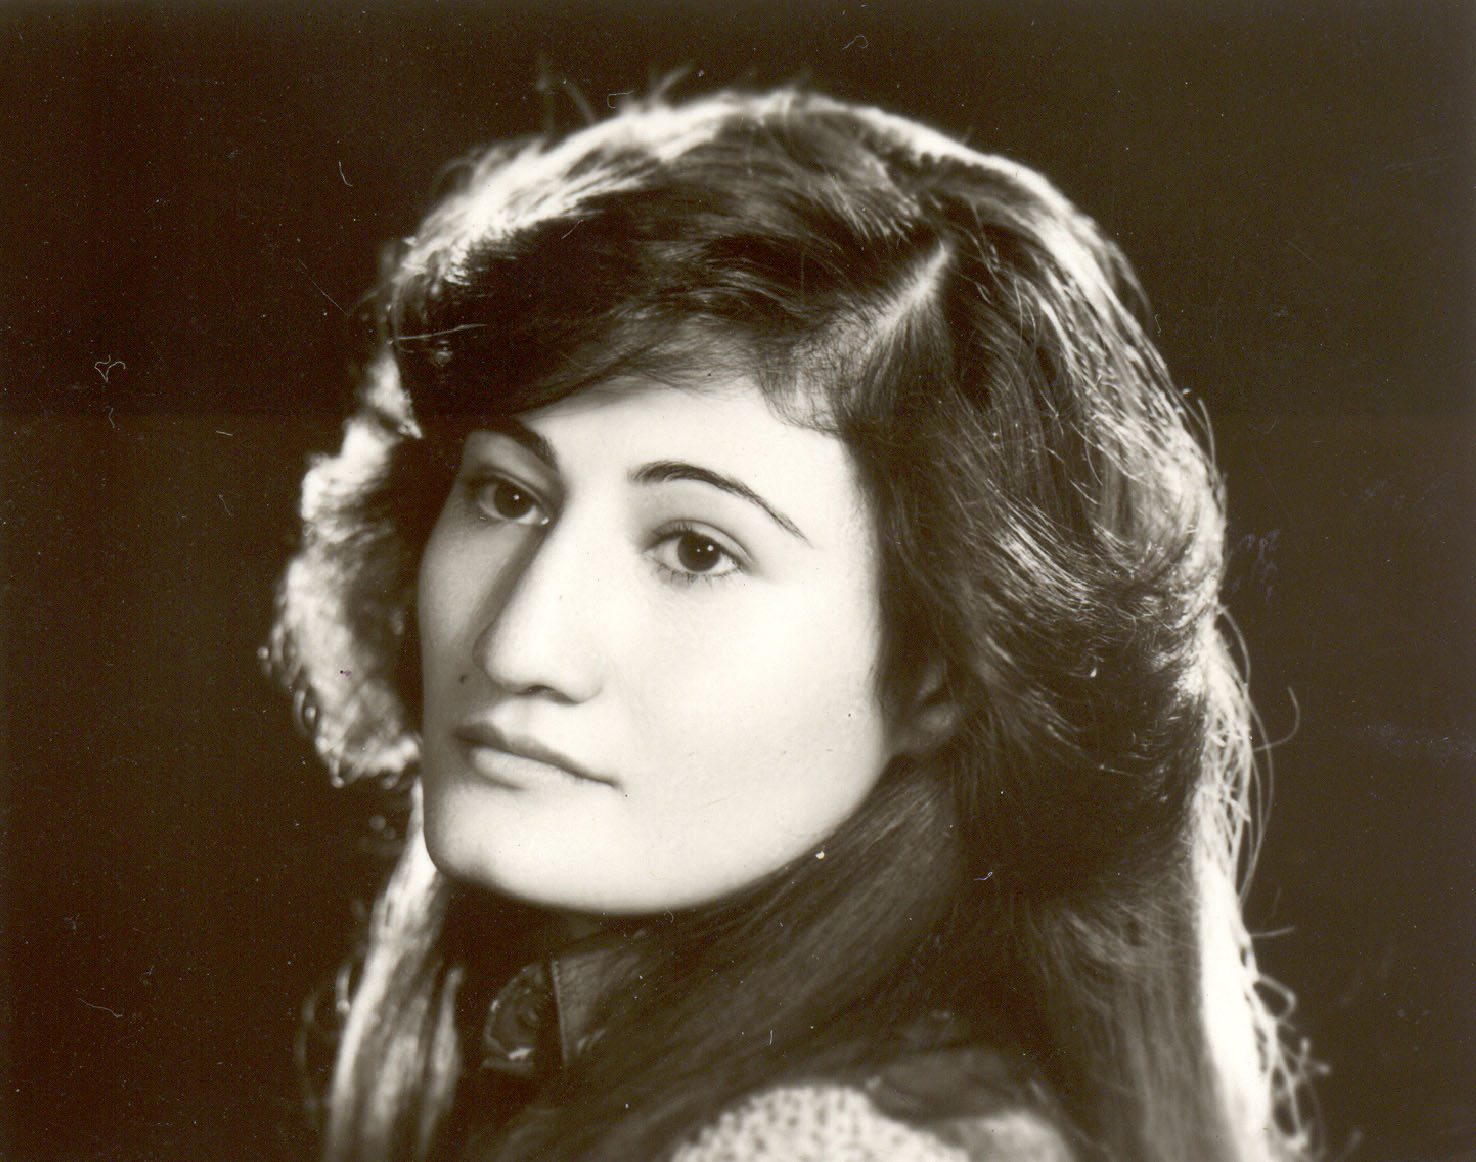 Mahnaz Ziadmanesh. 